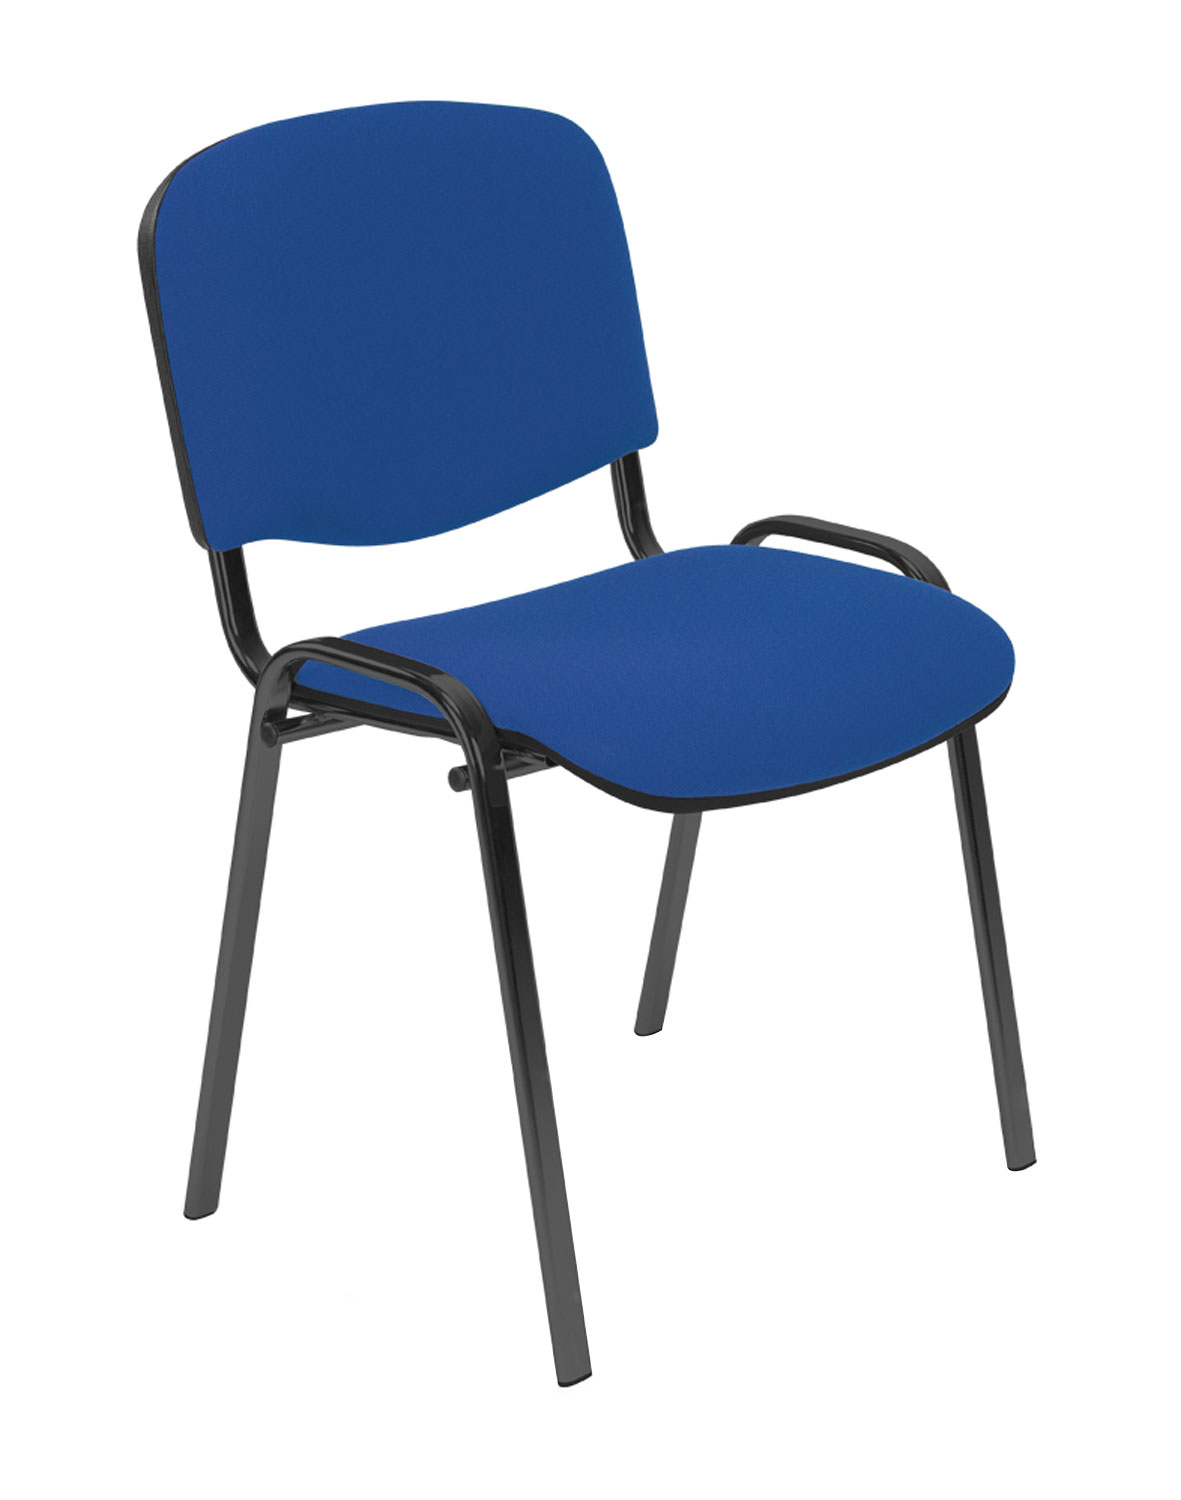 Nowy Styl Iso black konferenční židle